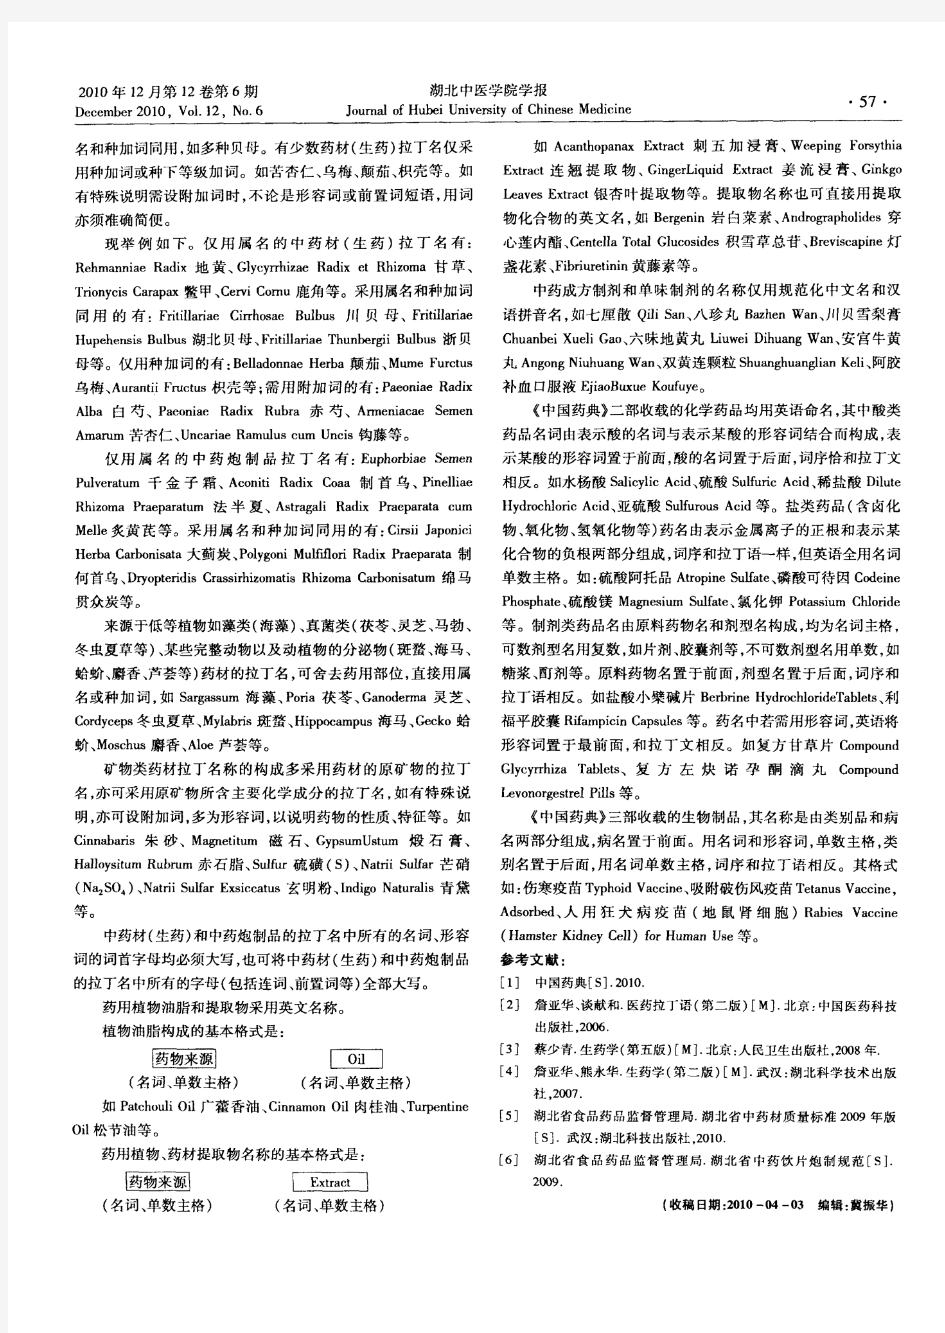 《中国药典》2010年版药品拉丁名、英文名命名规则剖析